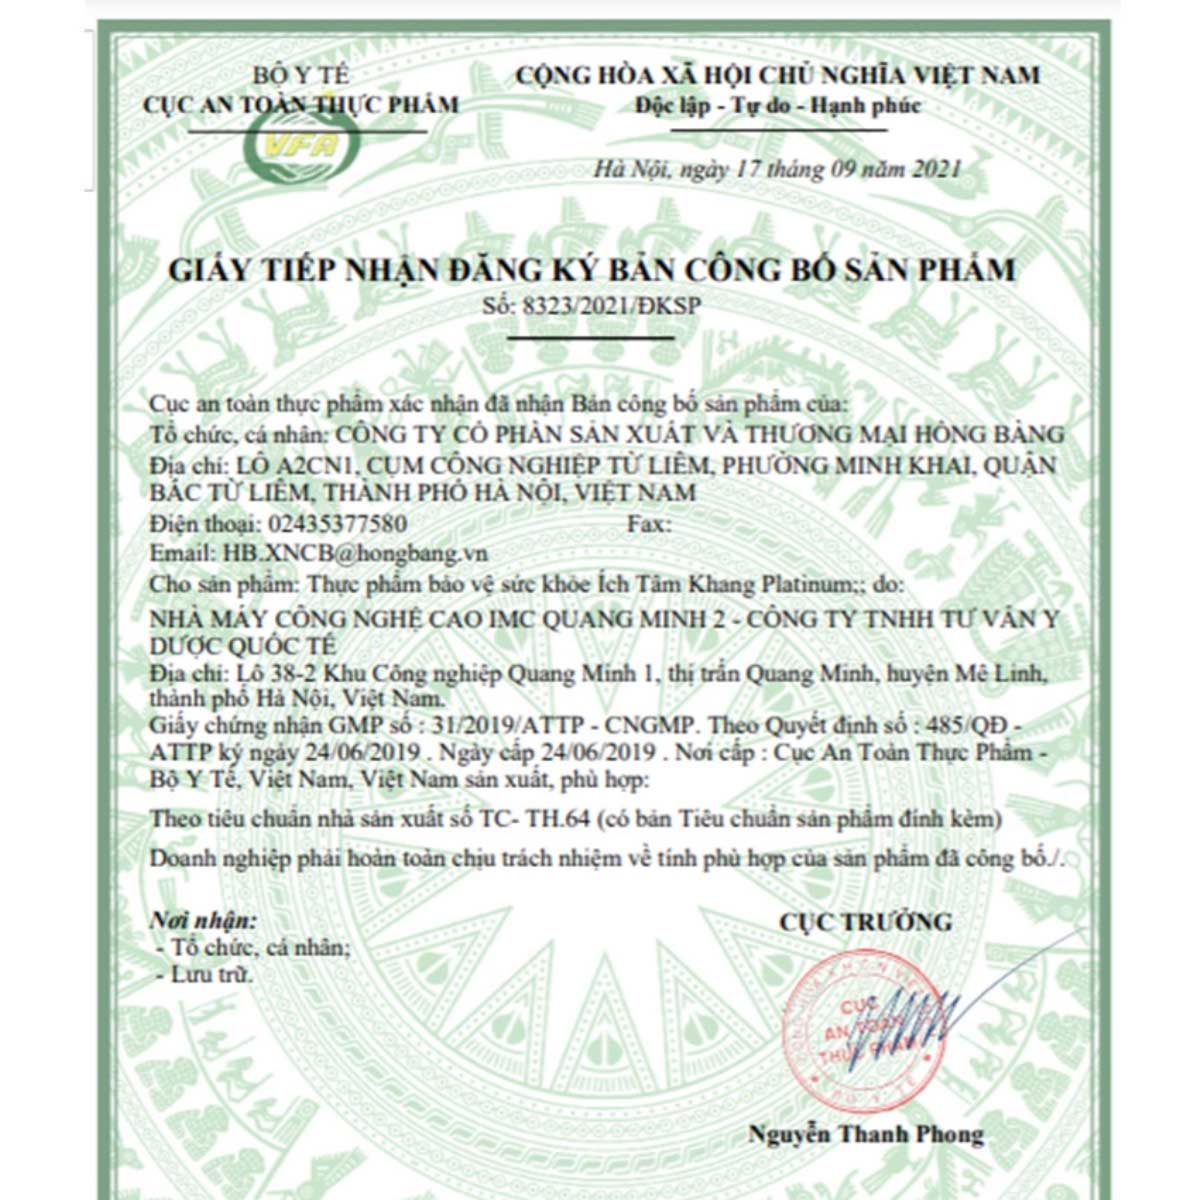 Giấy tiếp nhận bản đăng ký công bố sản phẩm Ích Tâm Khang Platinum